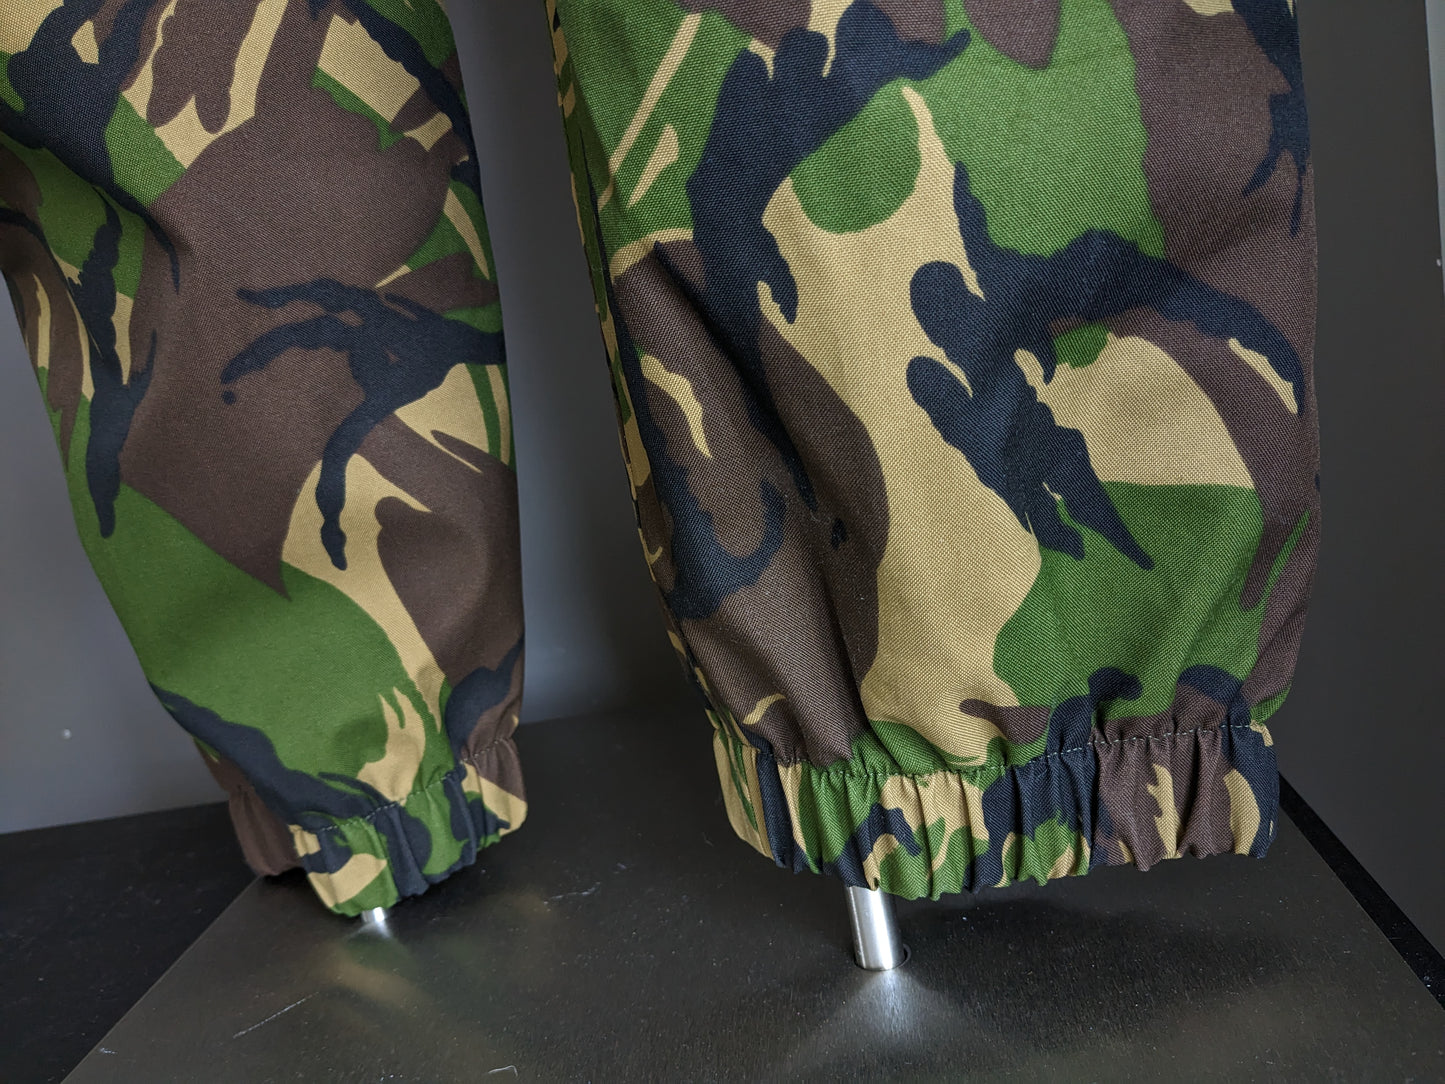 Pantalones del ejército / ejército. Hidrófugo. Impresión de camuflaje negro marrón verde. Talla M.